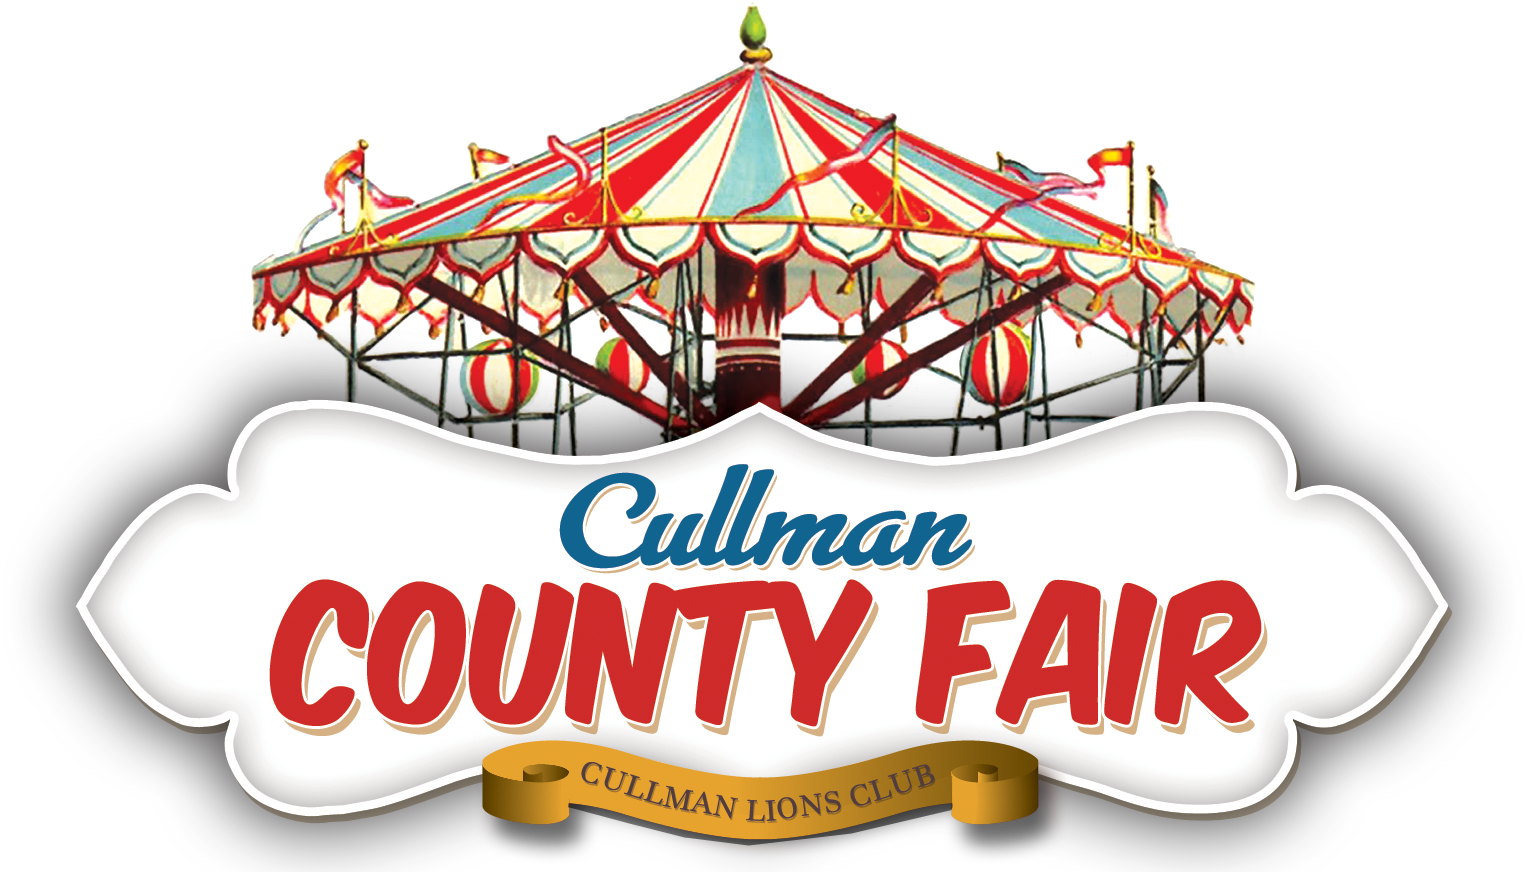 2018 Cullman County Fair